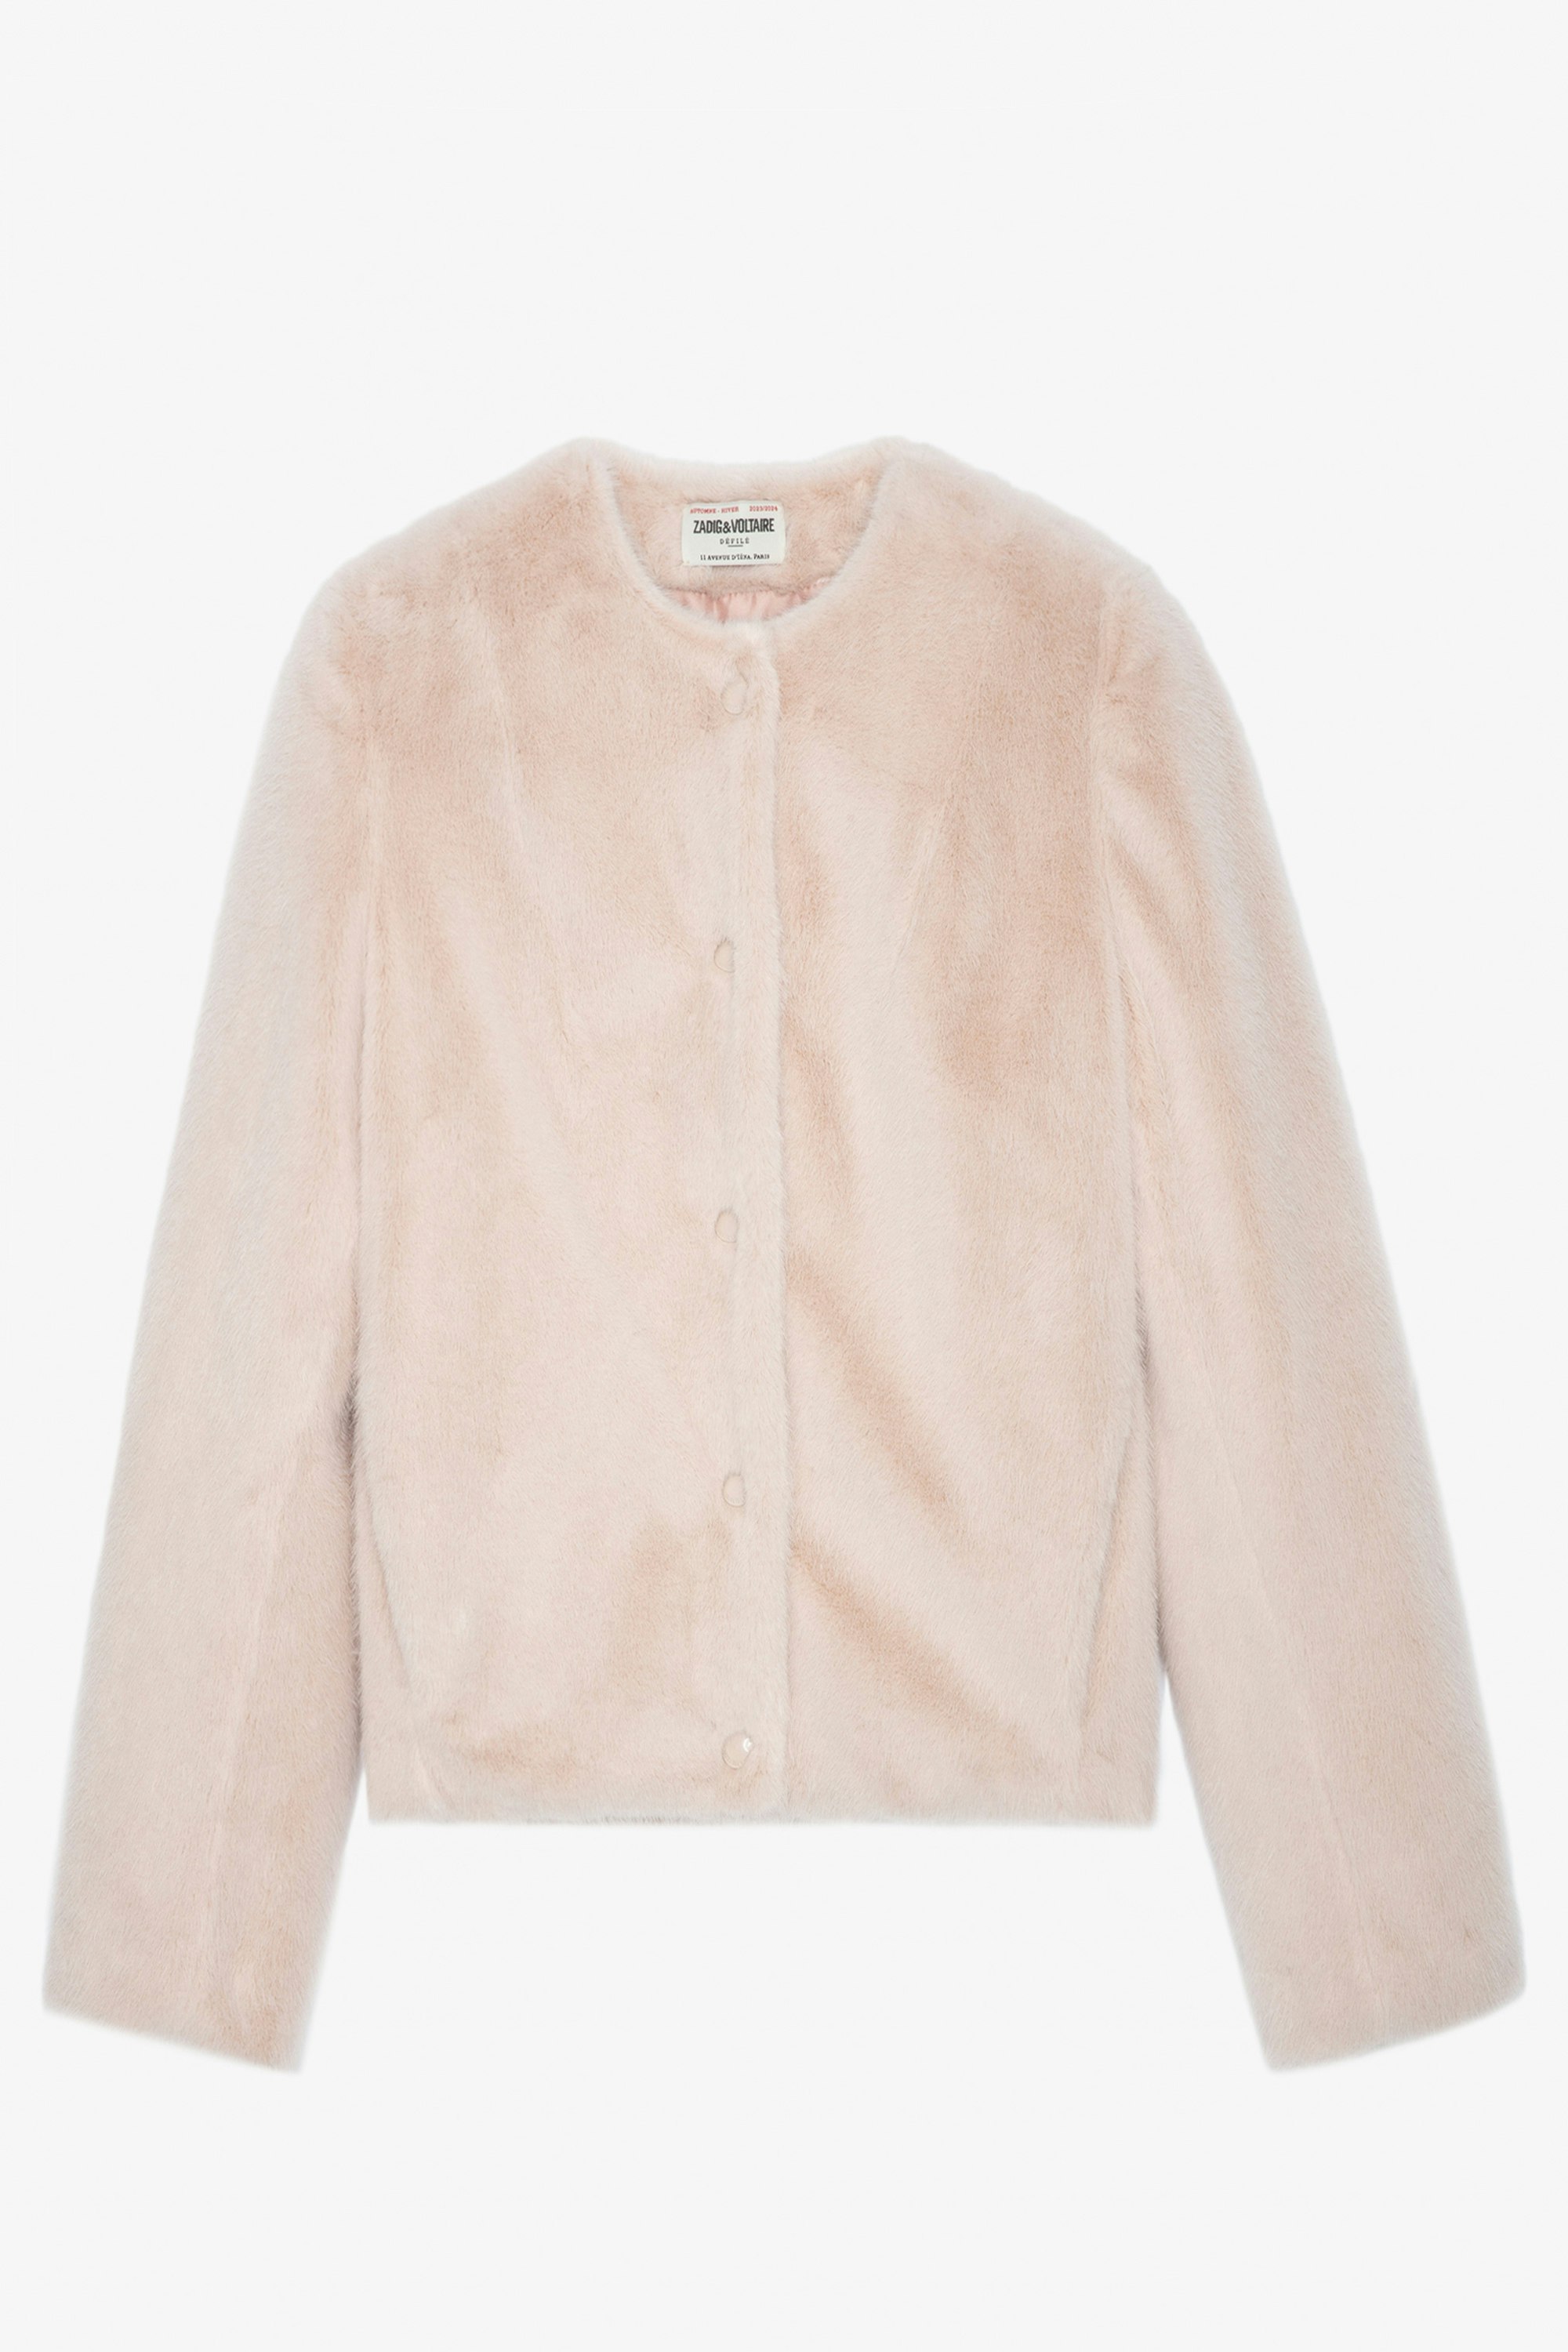 Freline Coat - Women’s short pale pink faux fur button-up coat.